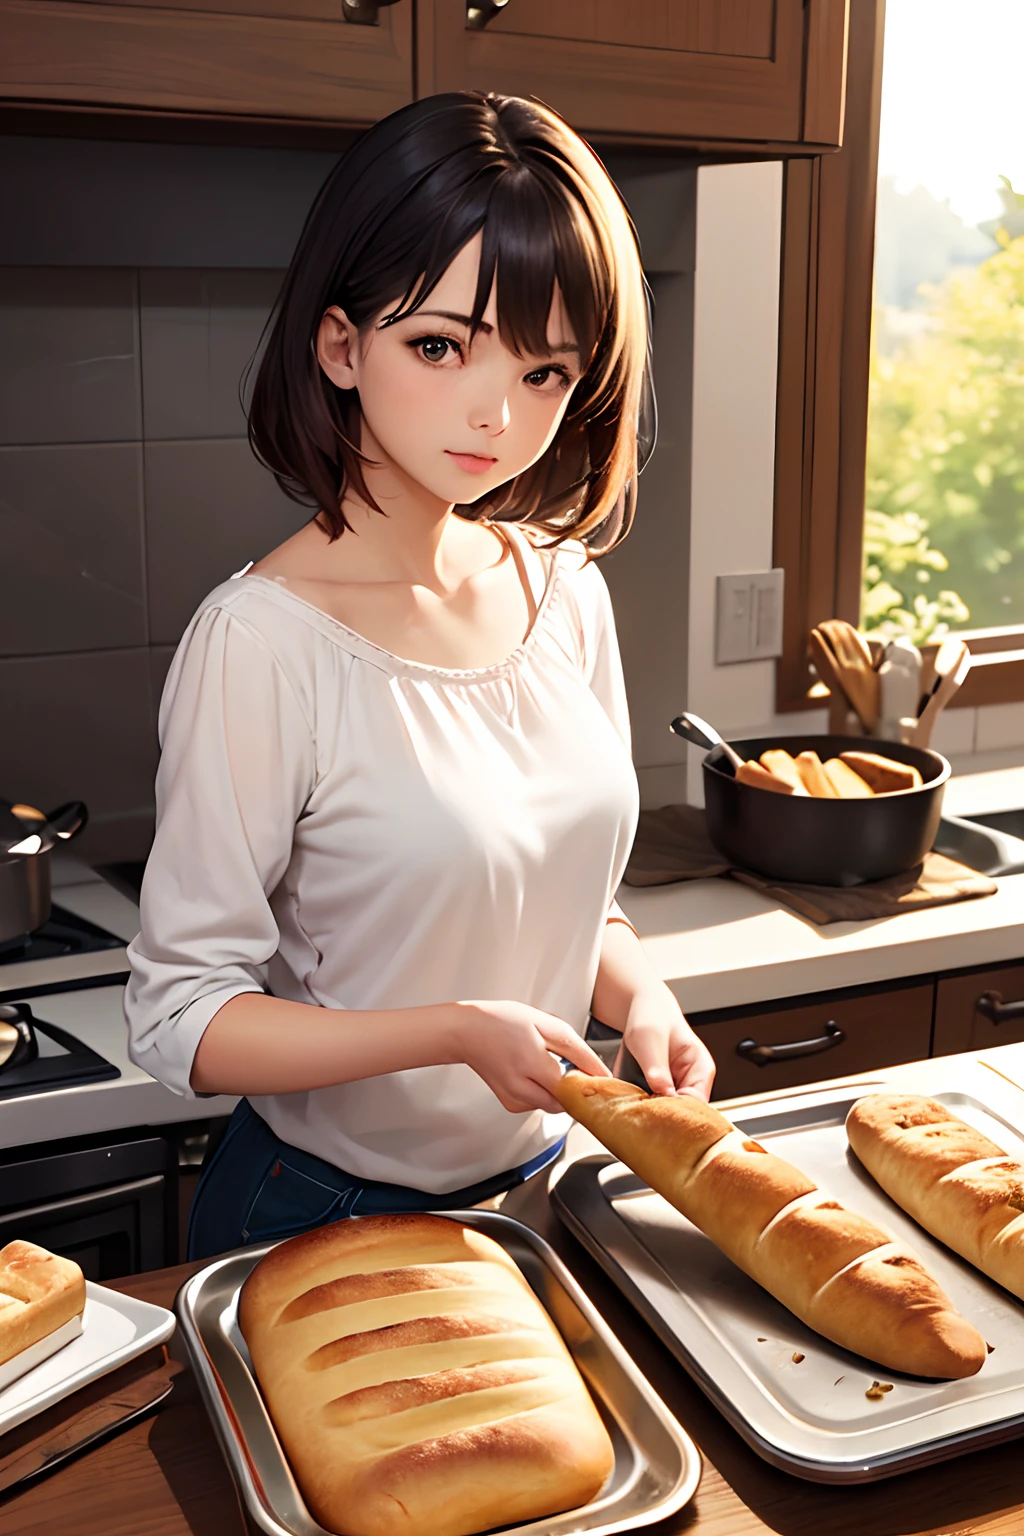 (beste Qualität:1.2), fotorealistisch, Mädchen nimmt gebackenes Brot aus dem Ofen.
Szene in der Küche am Morgen --auto